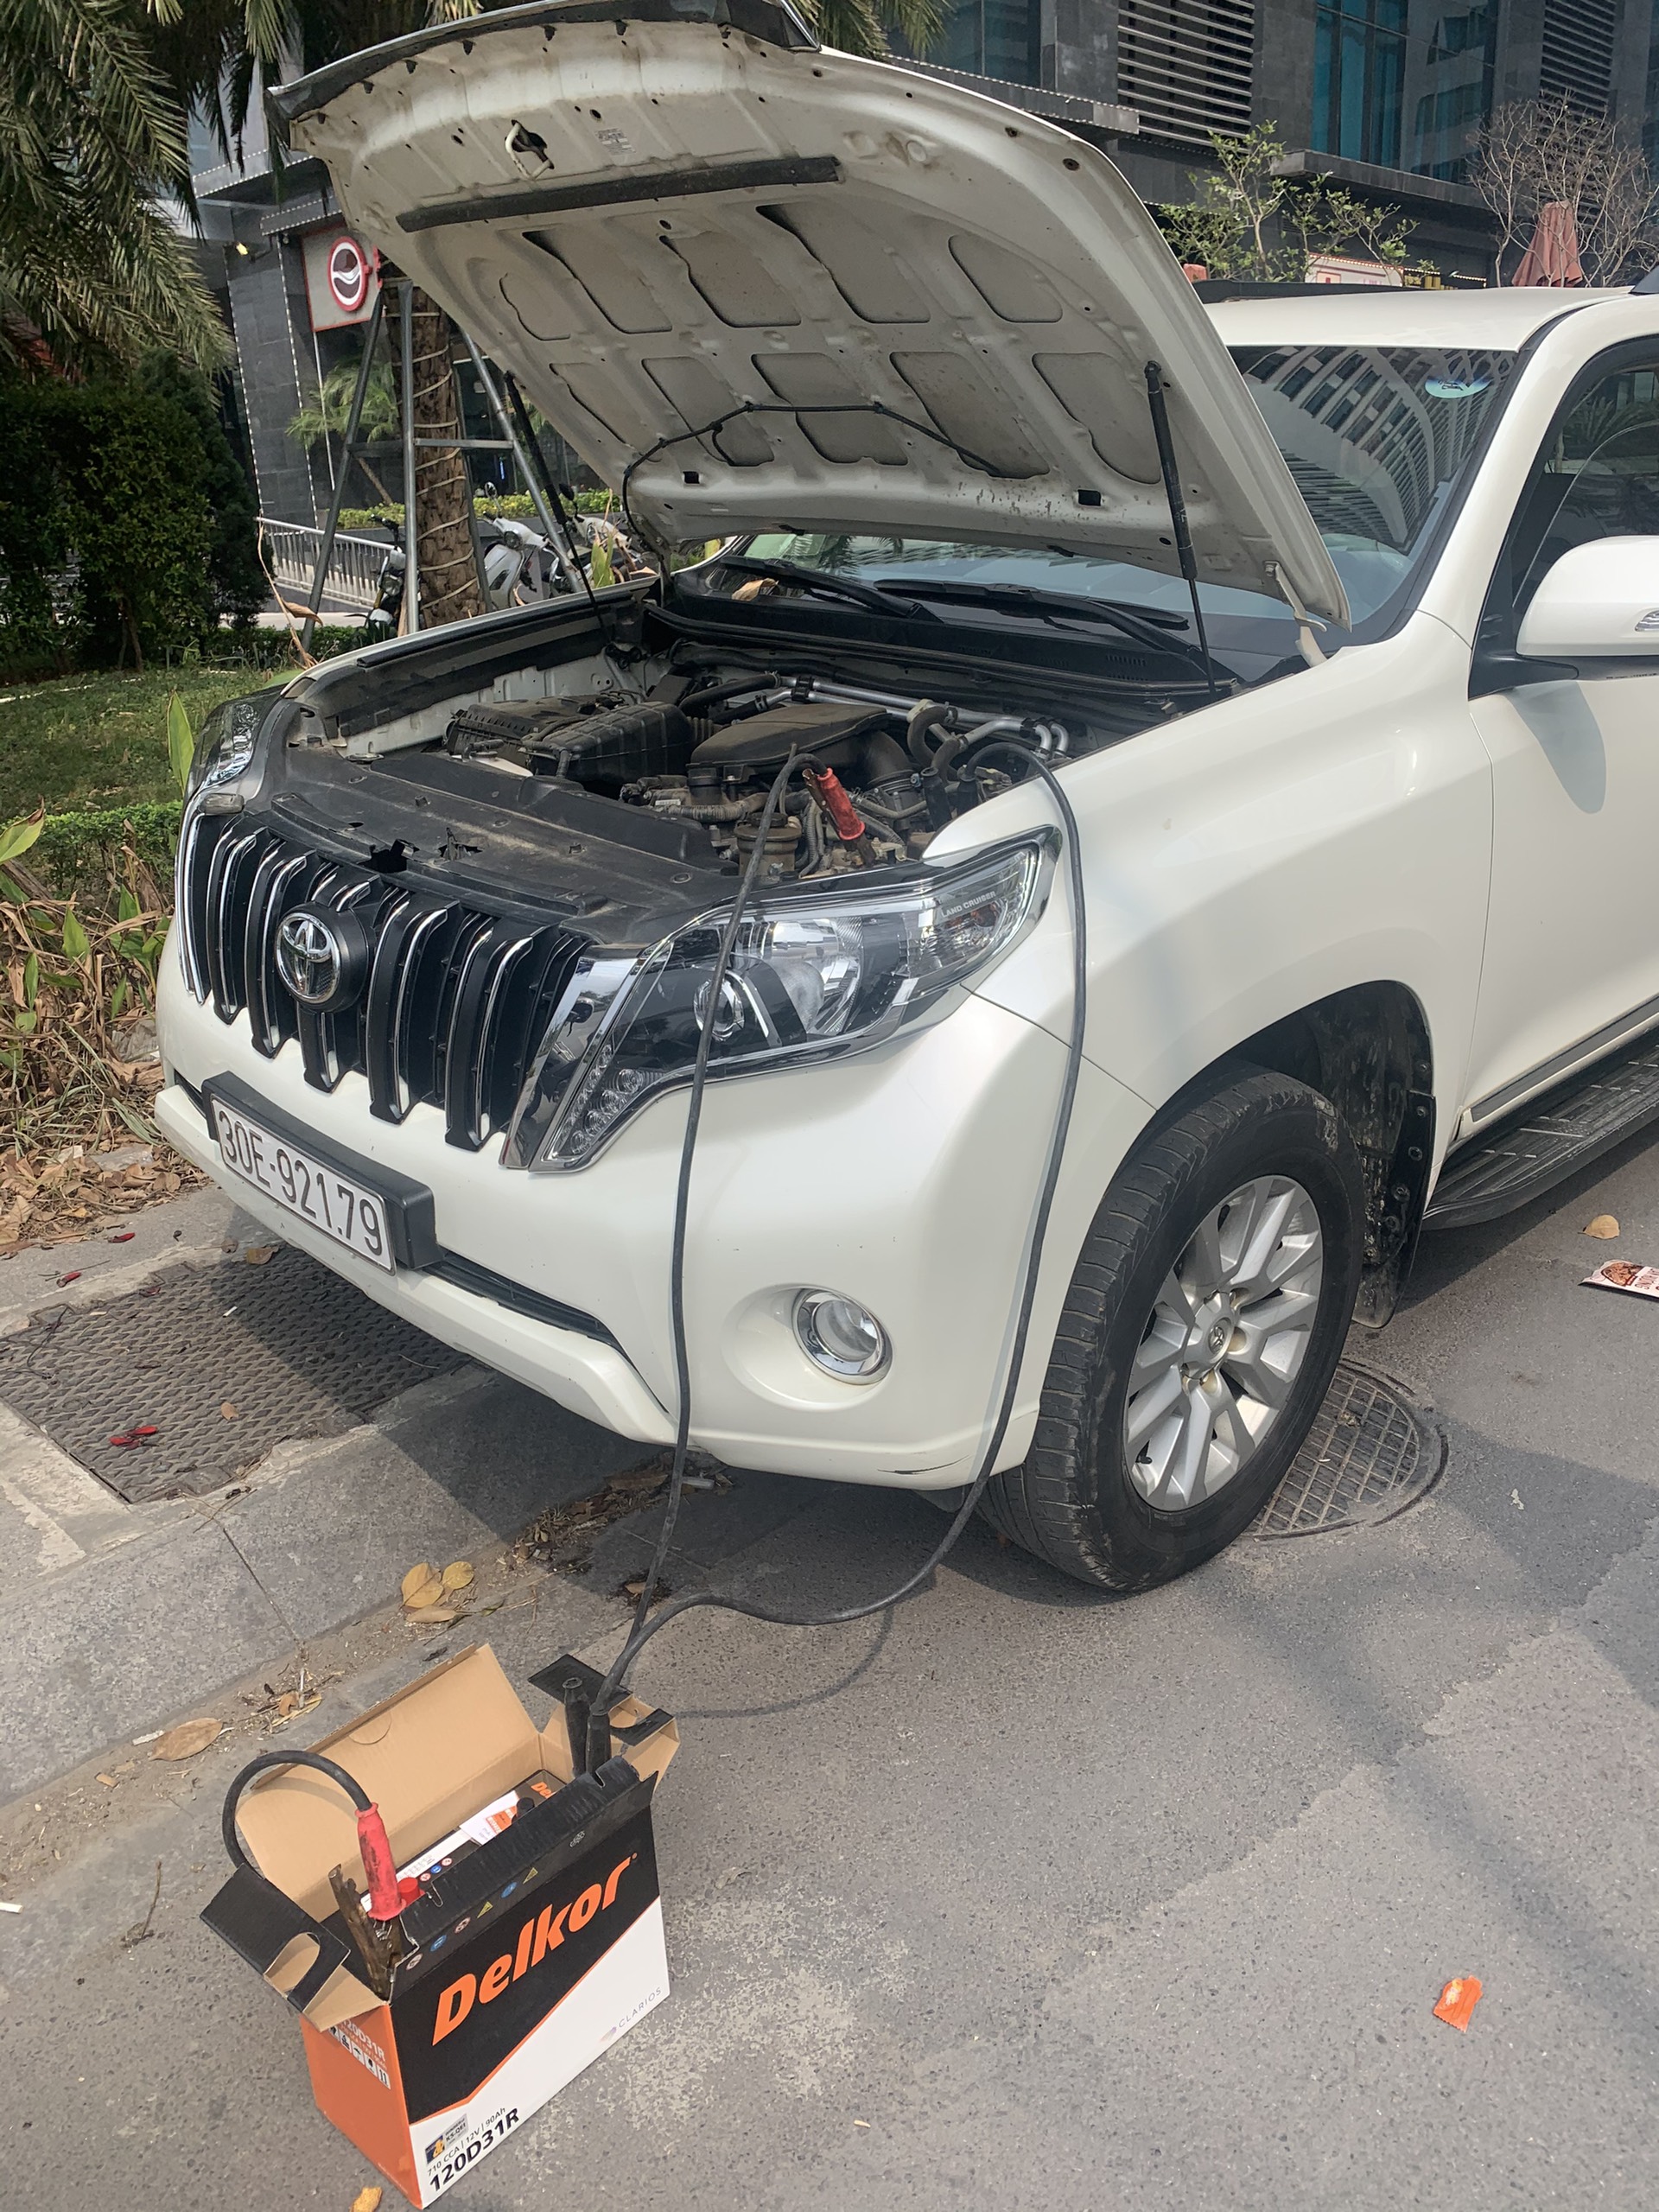 Cứu hộ câu Kích sạc thay bình ắc quy ô tô tại Huyện Sóc Sơn Hà Nội